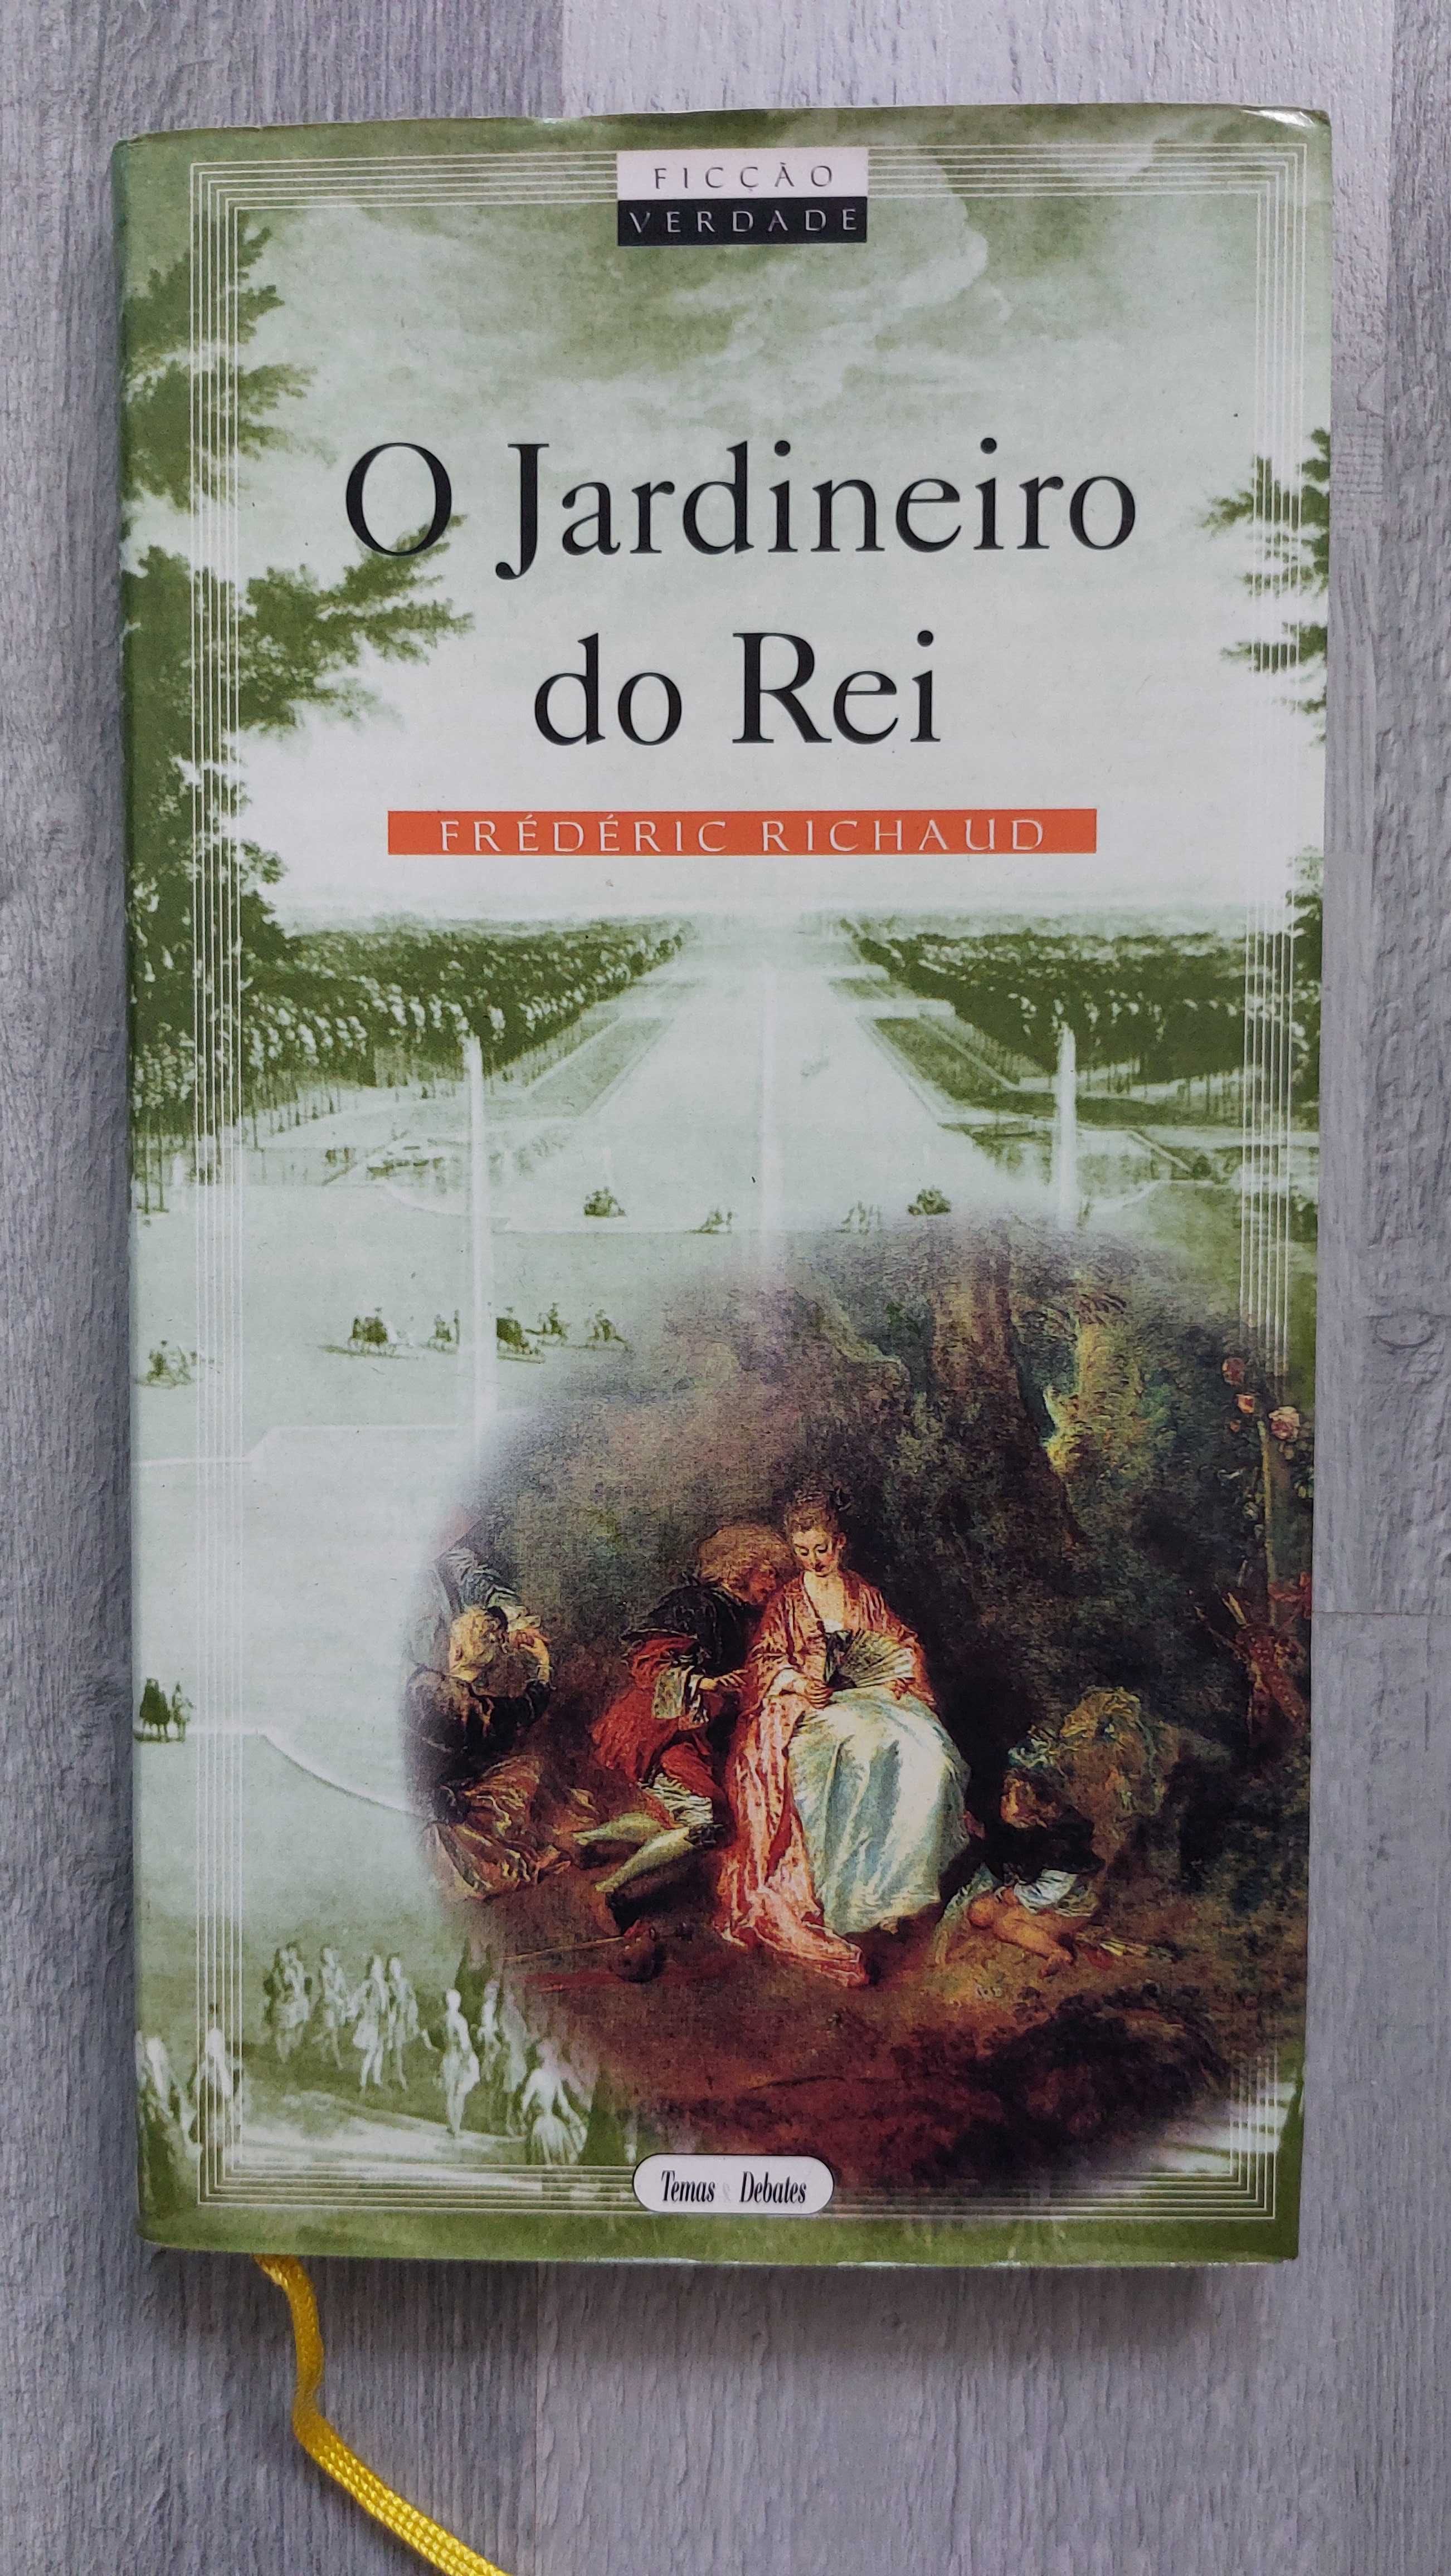 Livro "O Jardineiro do Rei" de Frédéric Richaud (portes incluídos)